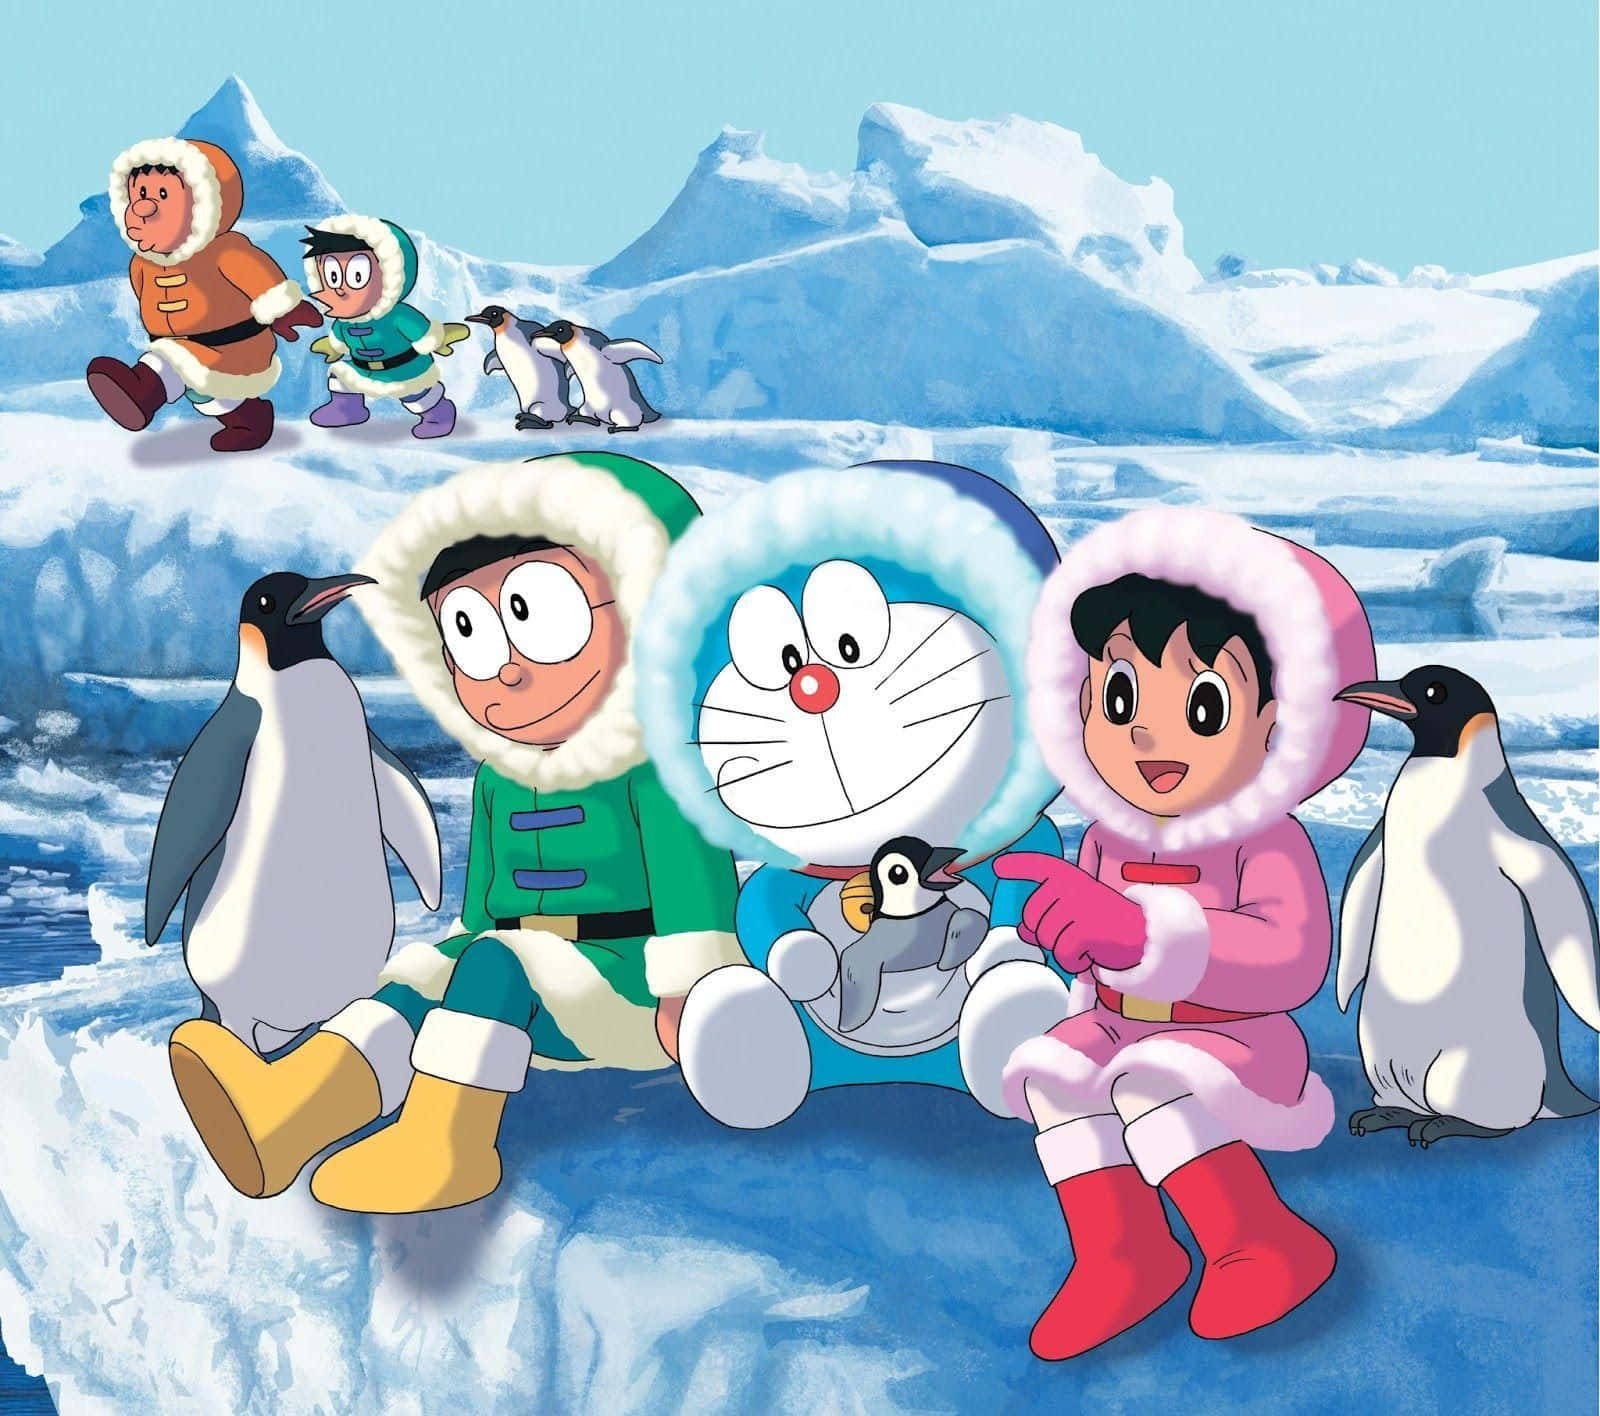 Doraemonden Elskede Robotkat Fra Japan.